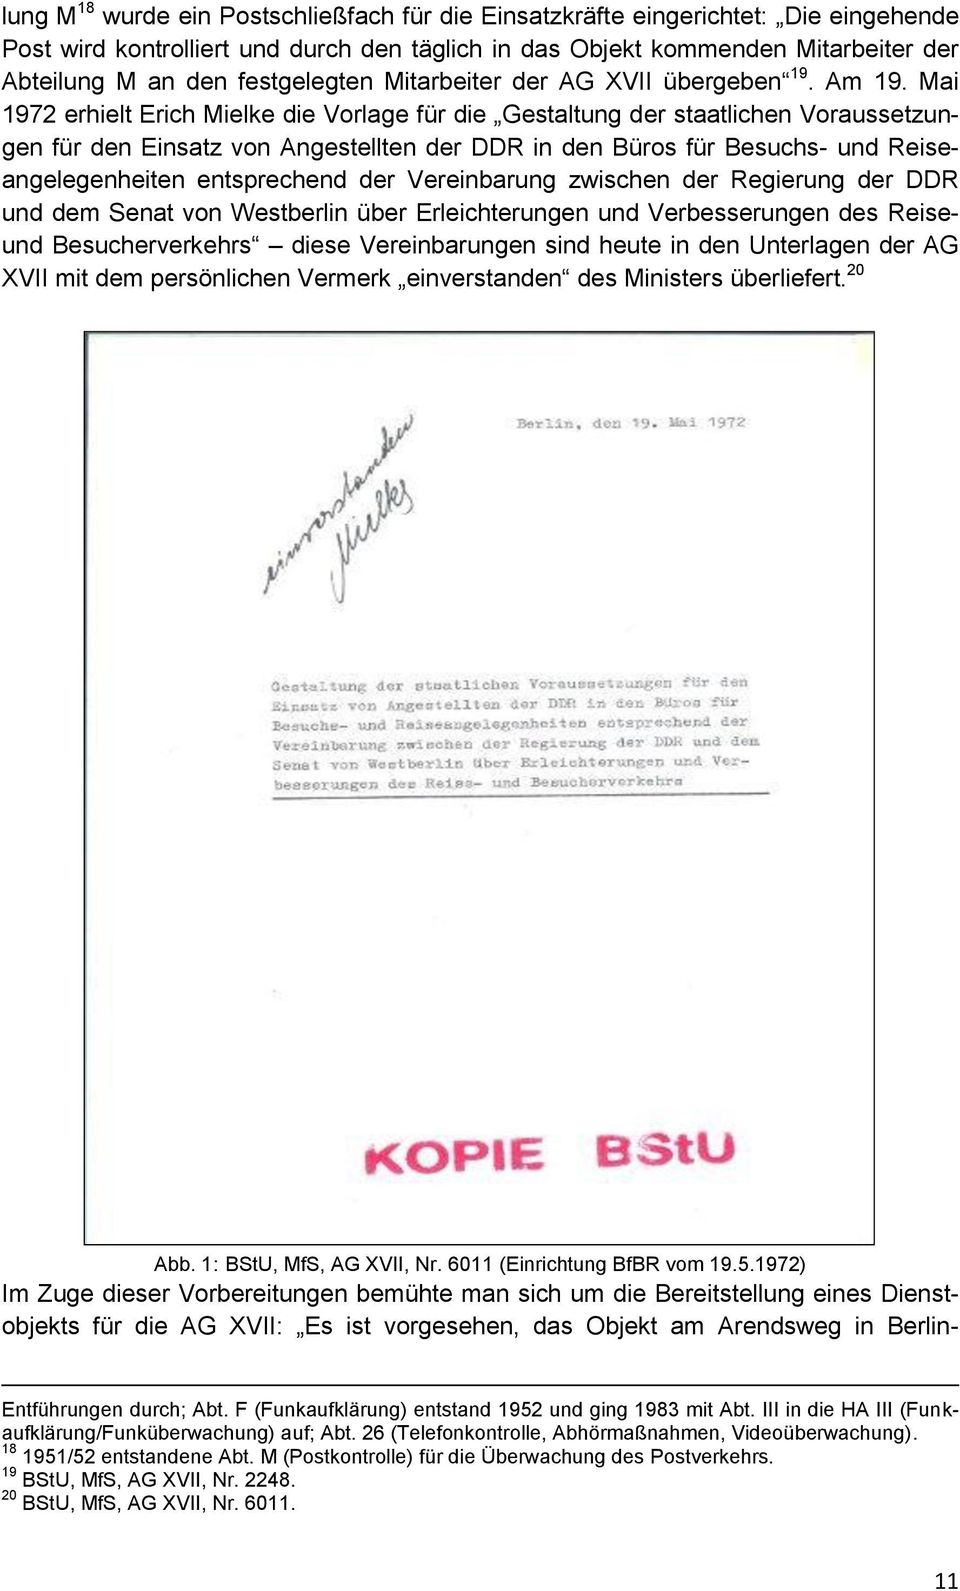 Mai 1972 erhielt Erich Mielke die Vorlage für die Gestaltung der staatlichen Voraussetzungen für den Einsatz von Angestellten der DDR in den Büros für Besuchs- und Reiseangelegenheiten entsprechend